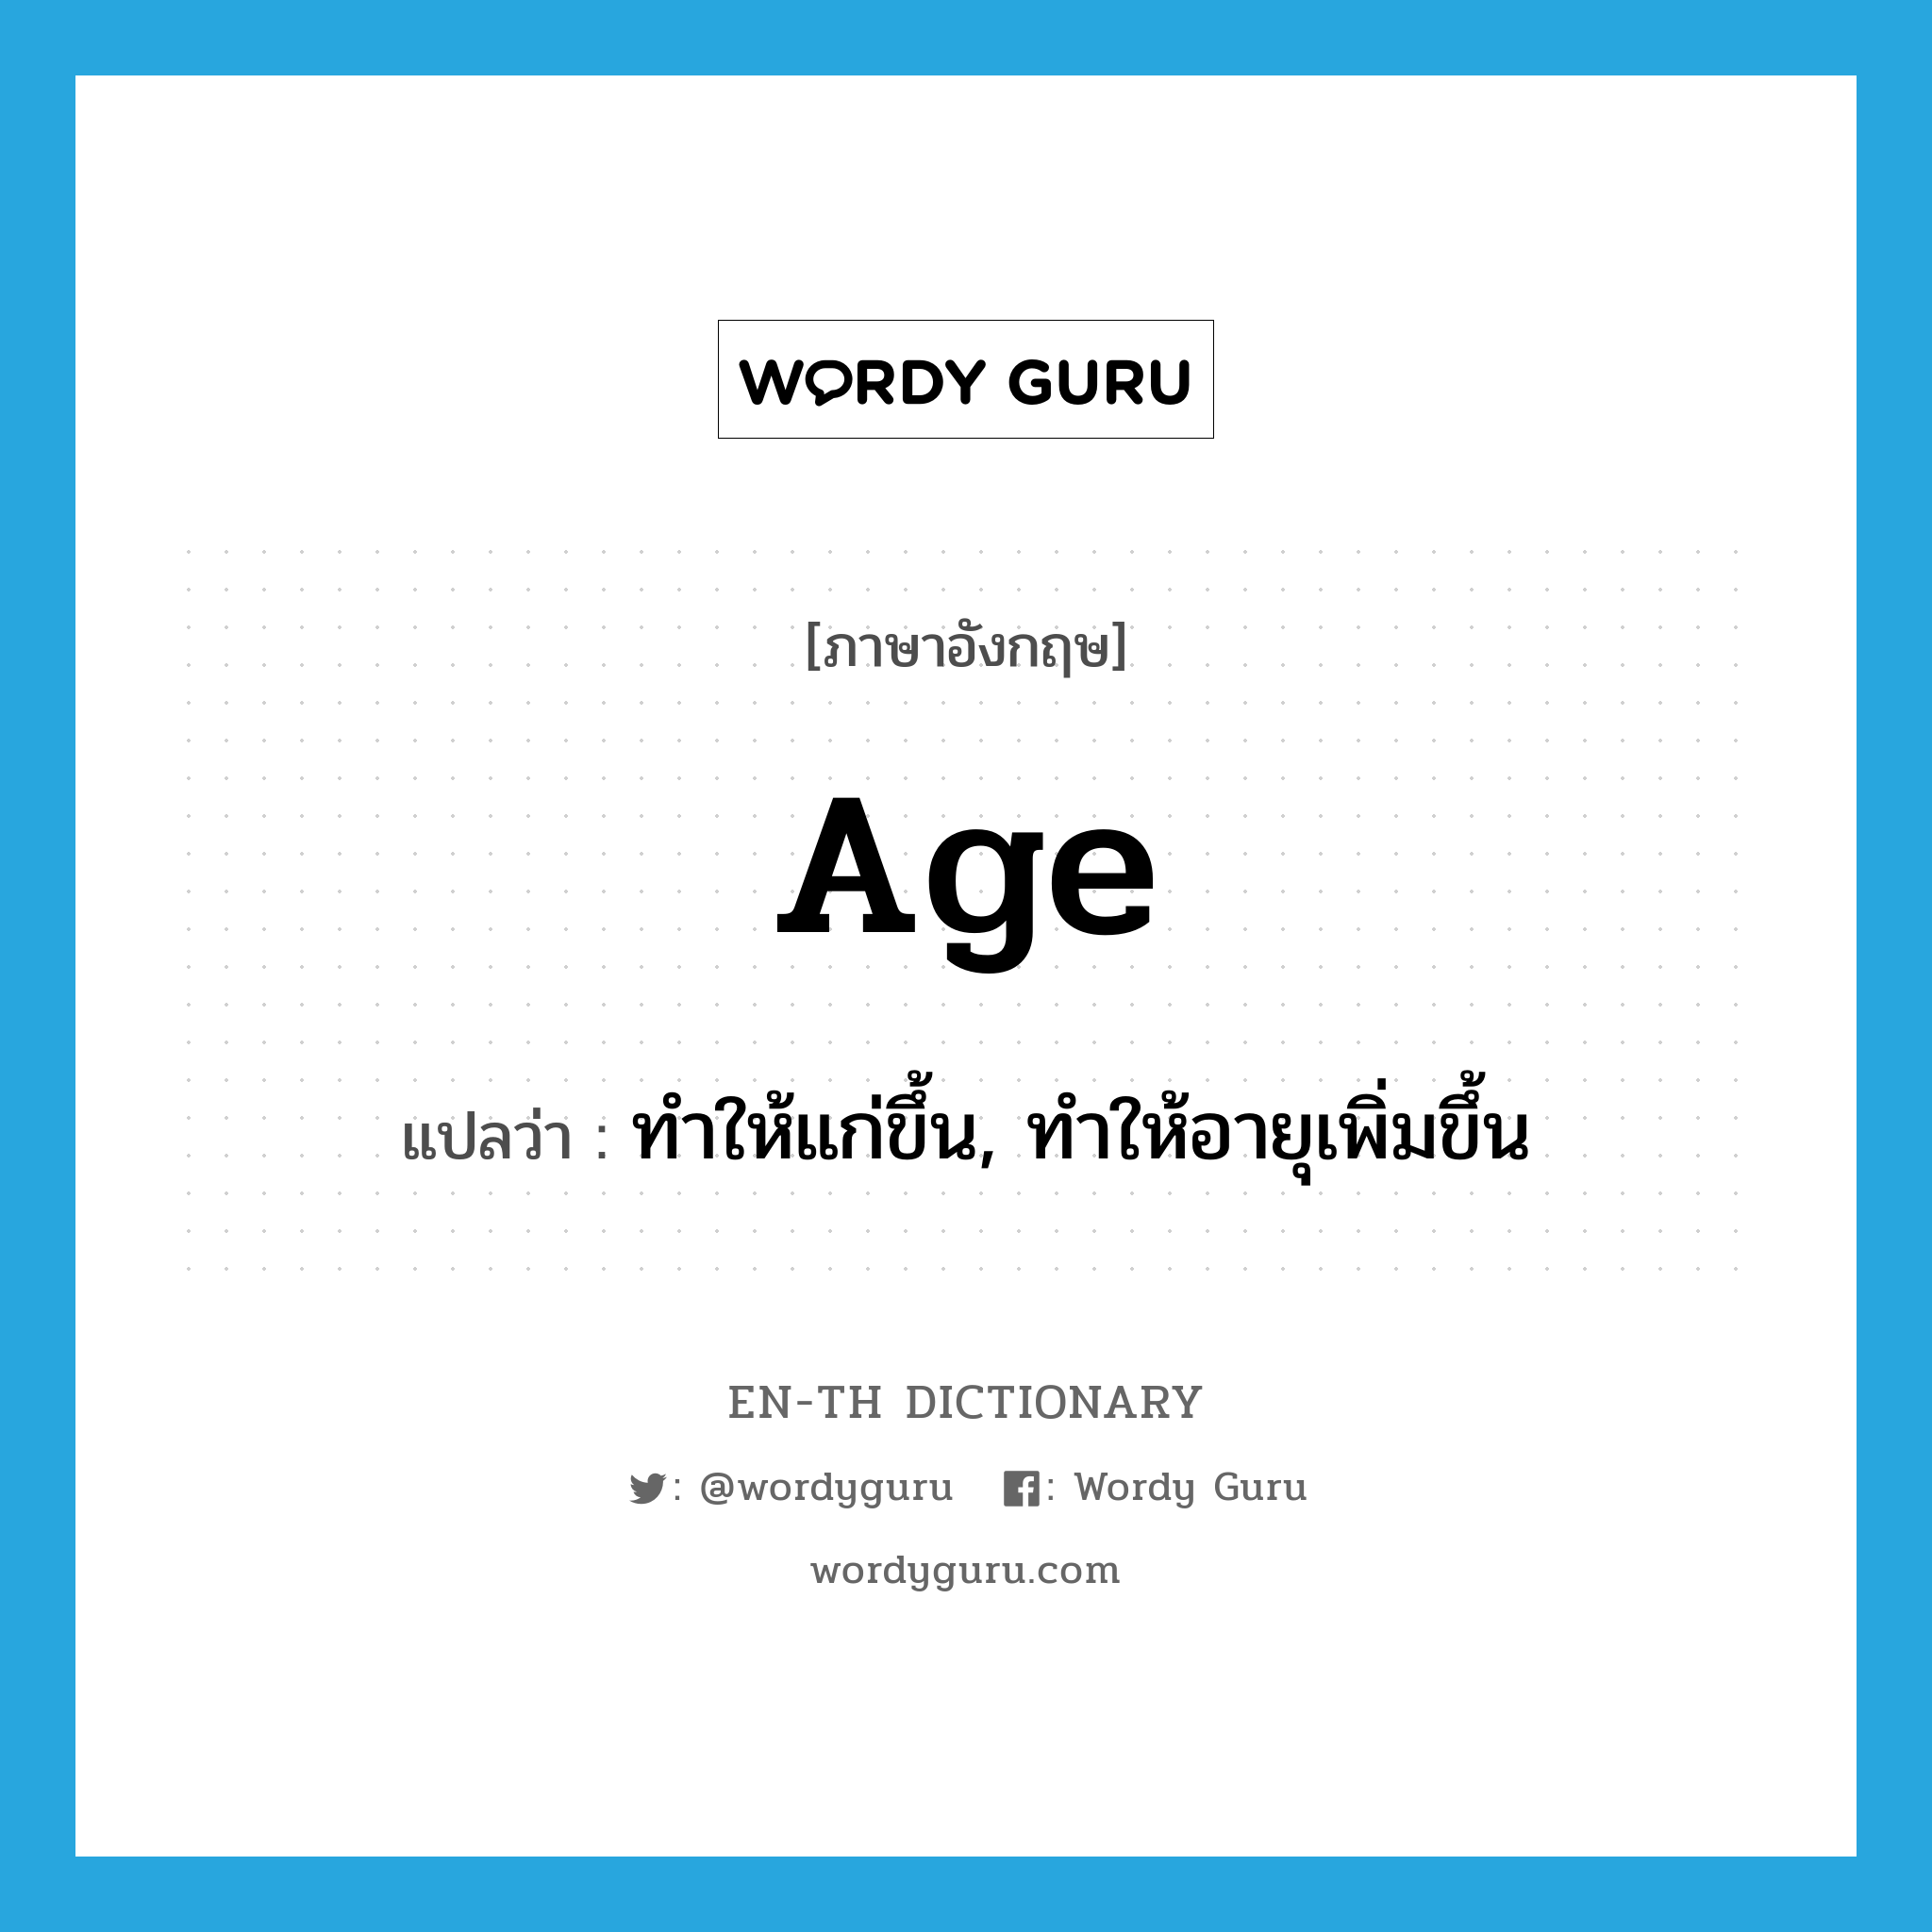 ทำให้แก่ขึ้น, ทำให้อายุเพิ่มขึ้น ภาษาอังกฤษ?, คำศัพท์ภาษาอังกฤษ ทำให้แก่ขึ้น, ทำให้อายุเพิ่มขึ้น แปลว่า age ประเภท VT หมวด VT